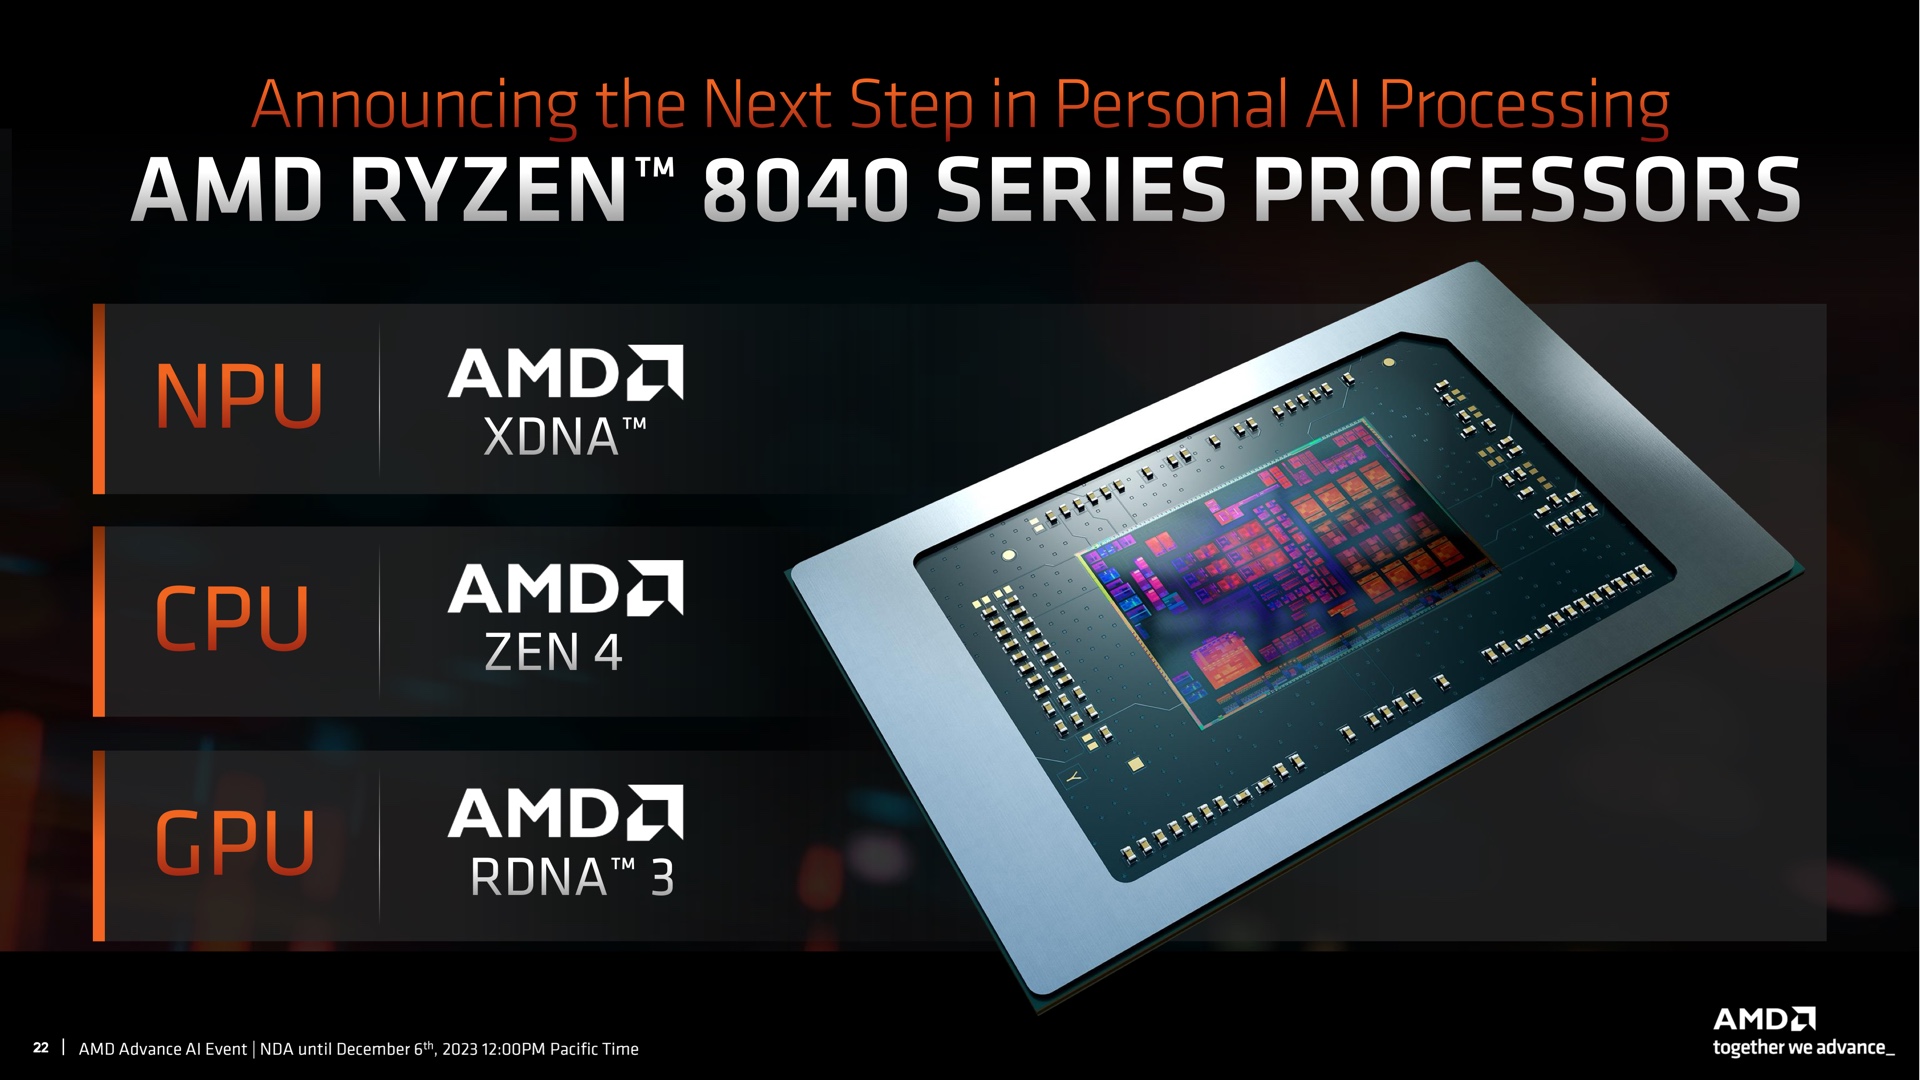 AMD tillkännagav plötsligt Ryzen 8040 mobilprocessorer med Zen 4-kärnor, RDNA 3-grafik och XDNA NPU-neuralchip